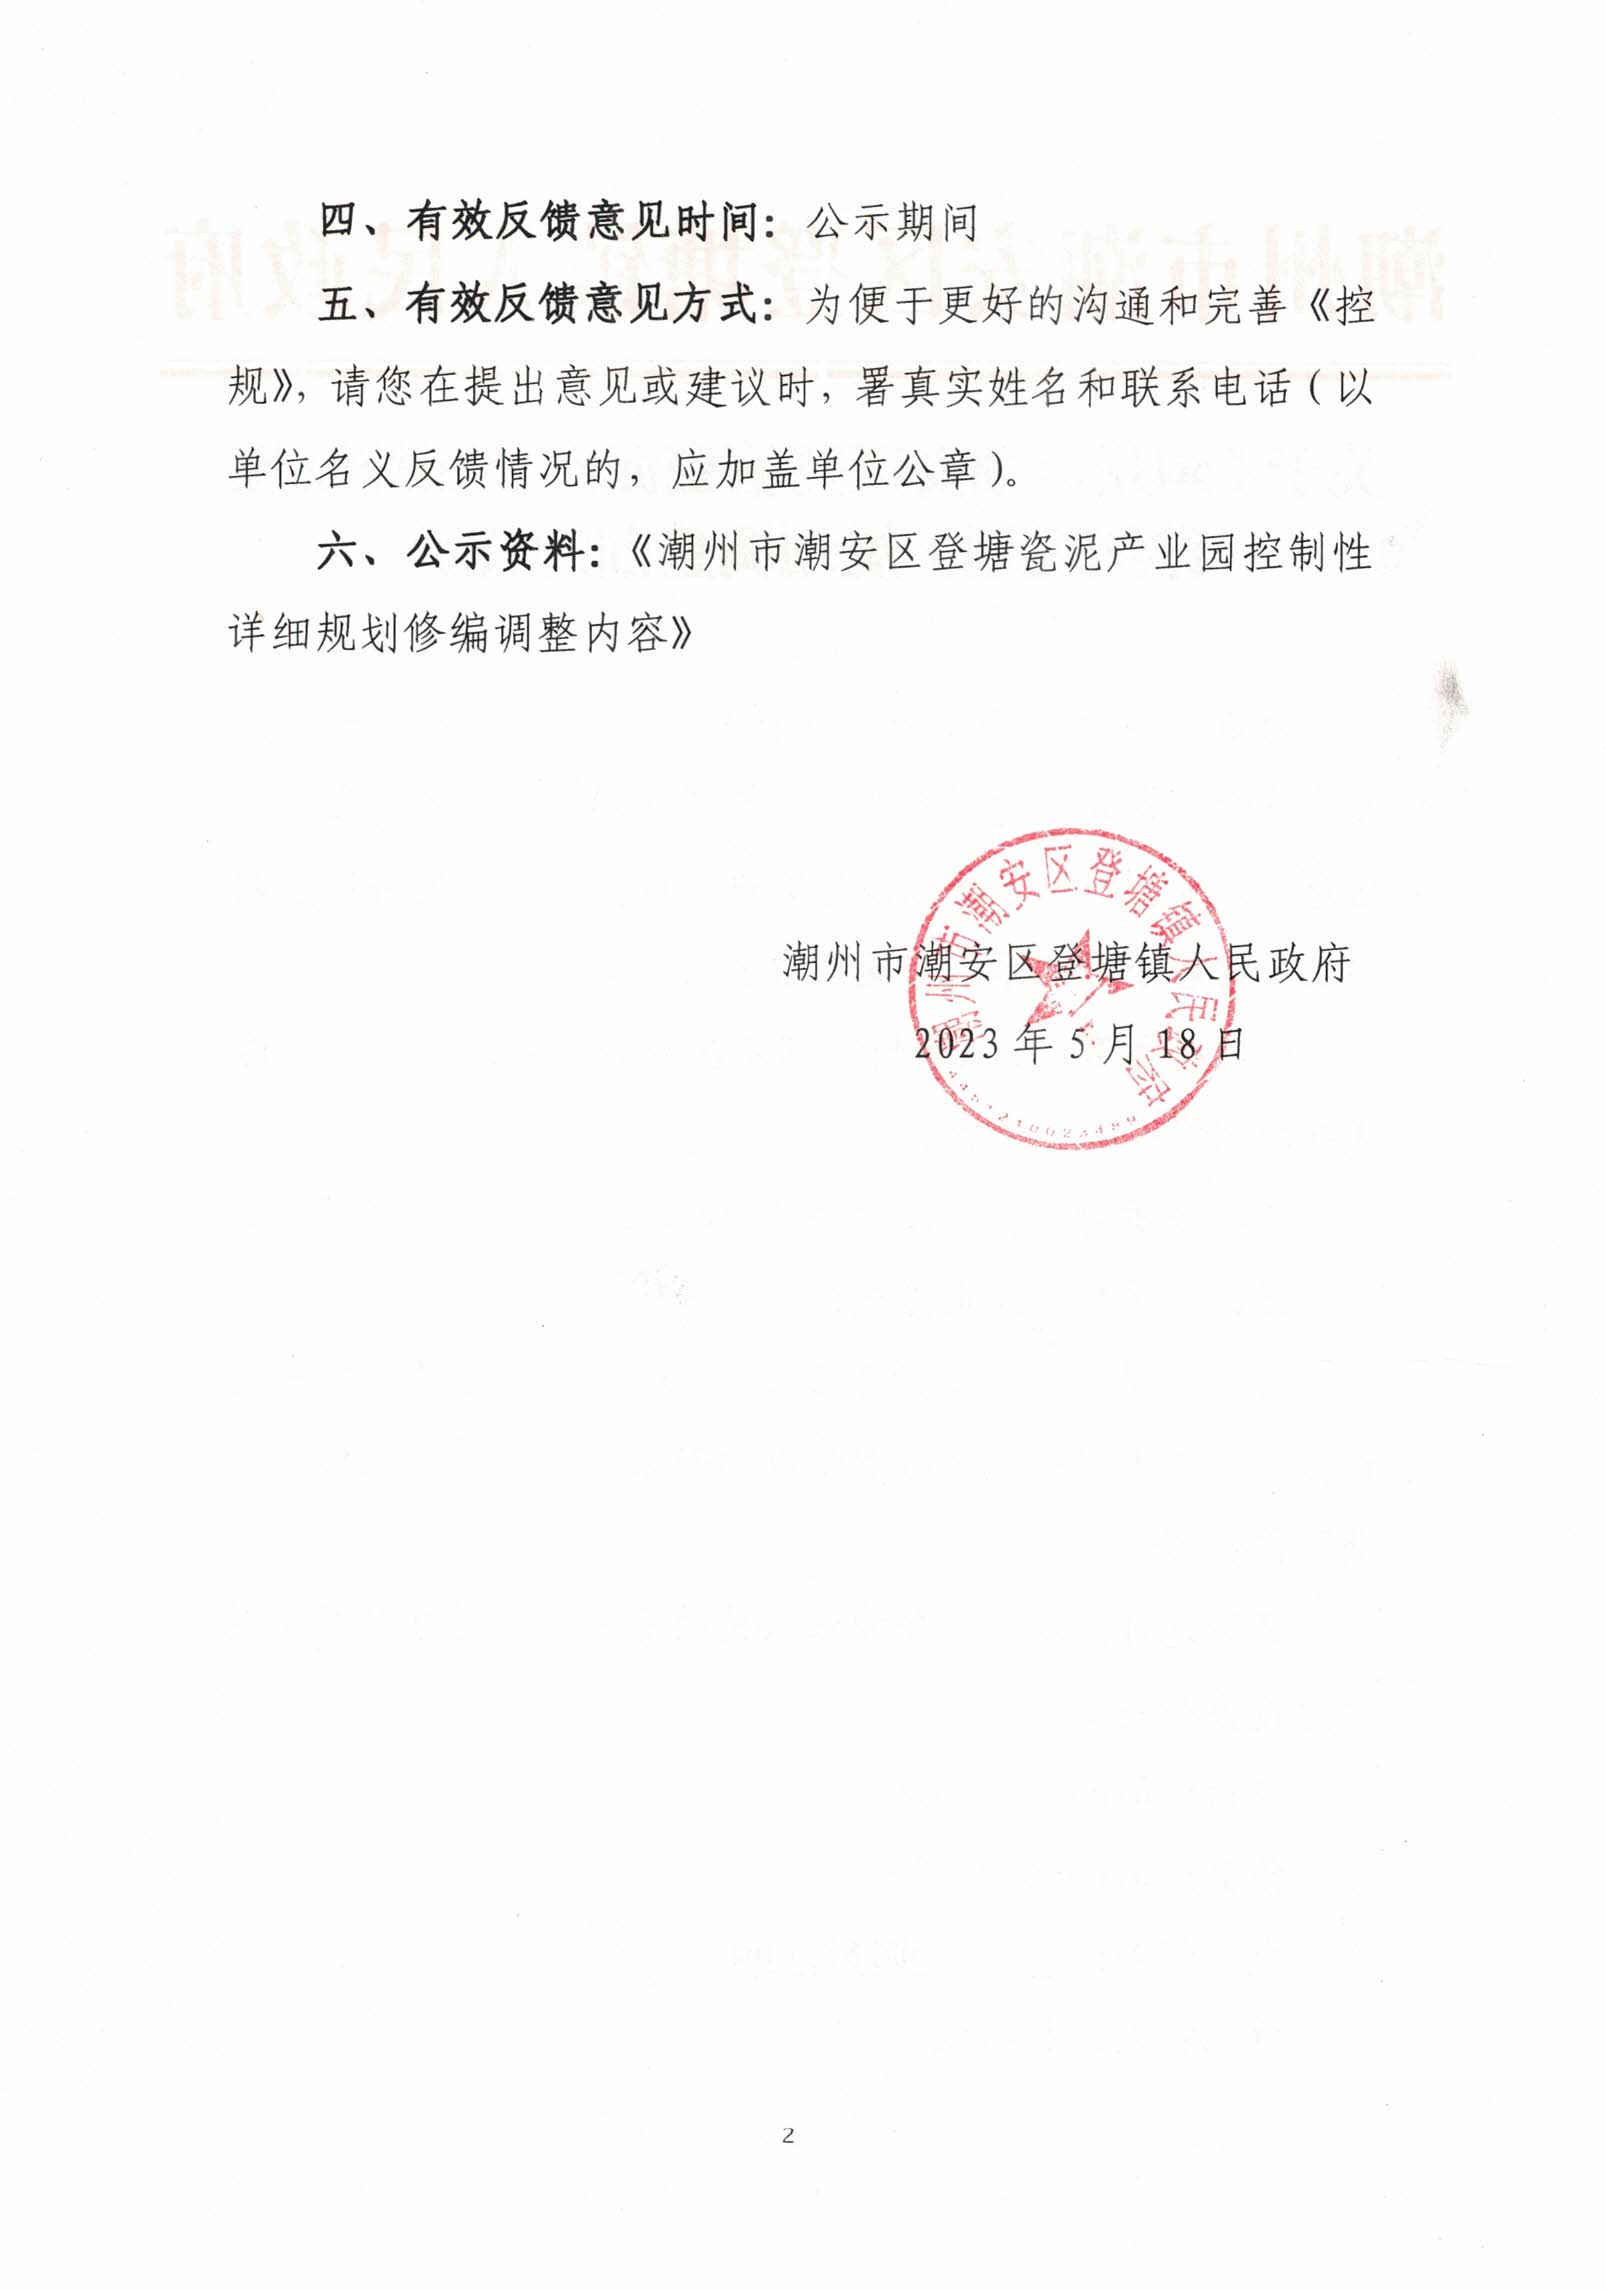 关于《潮州市潮安区登塘瓷泥产业园控制性详细规划》规划调整前的公示（2）.jpg